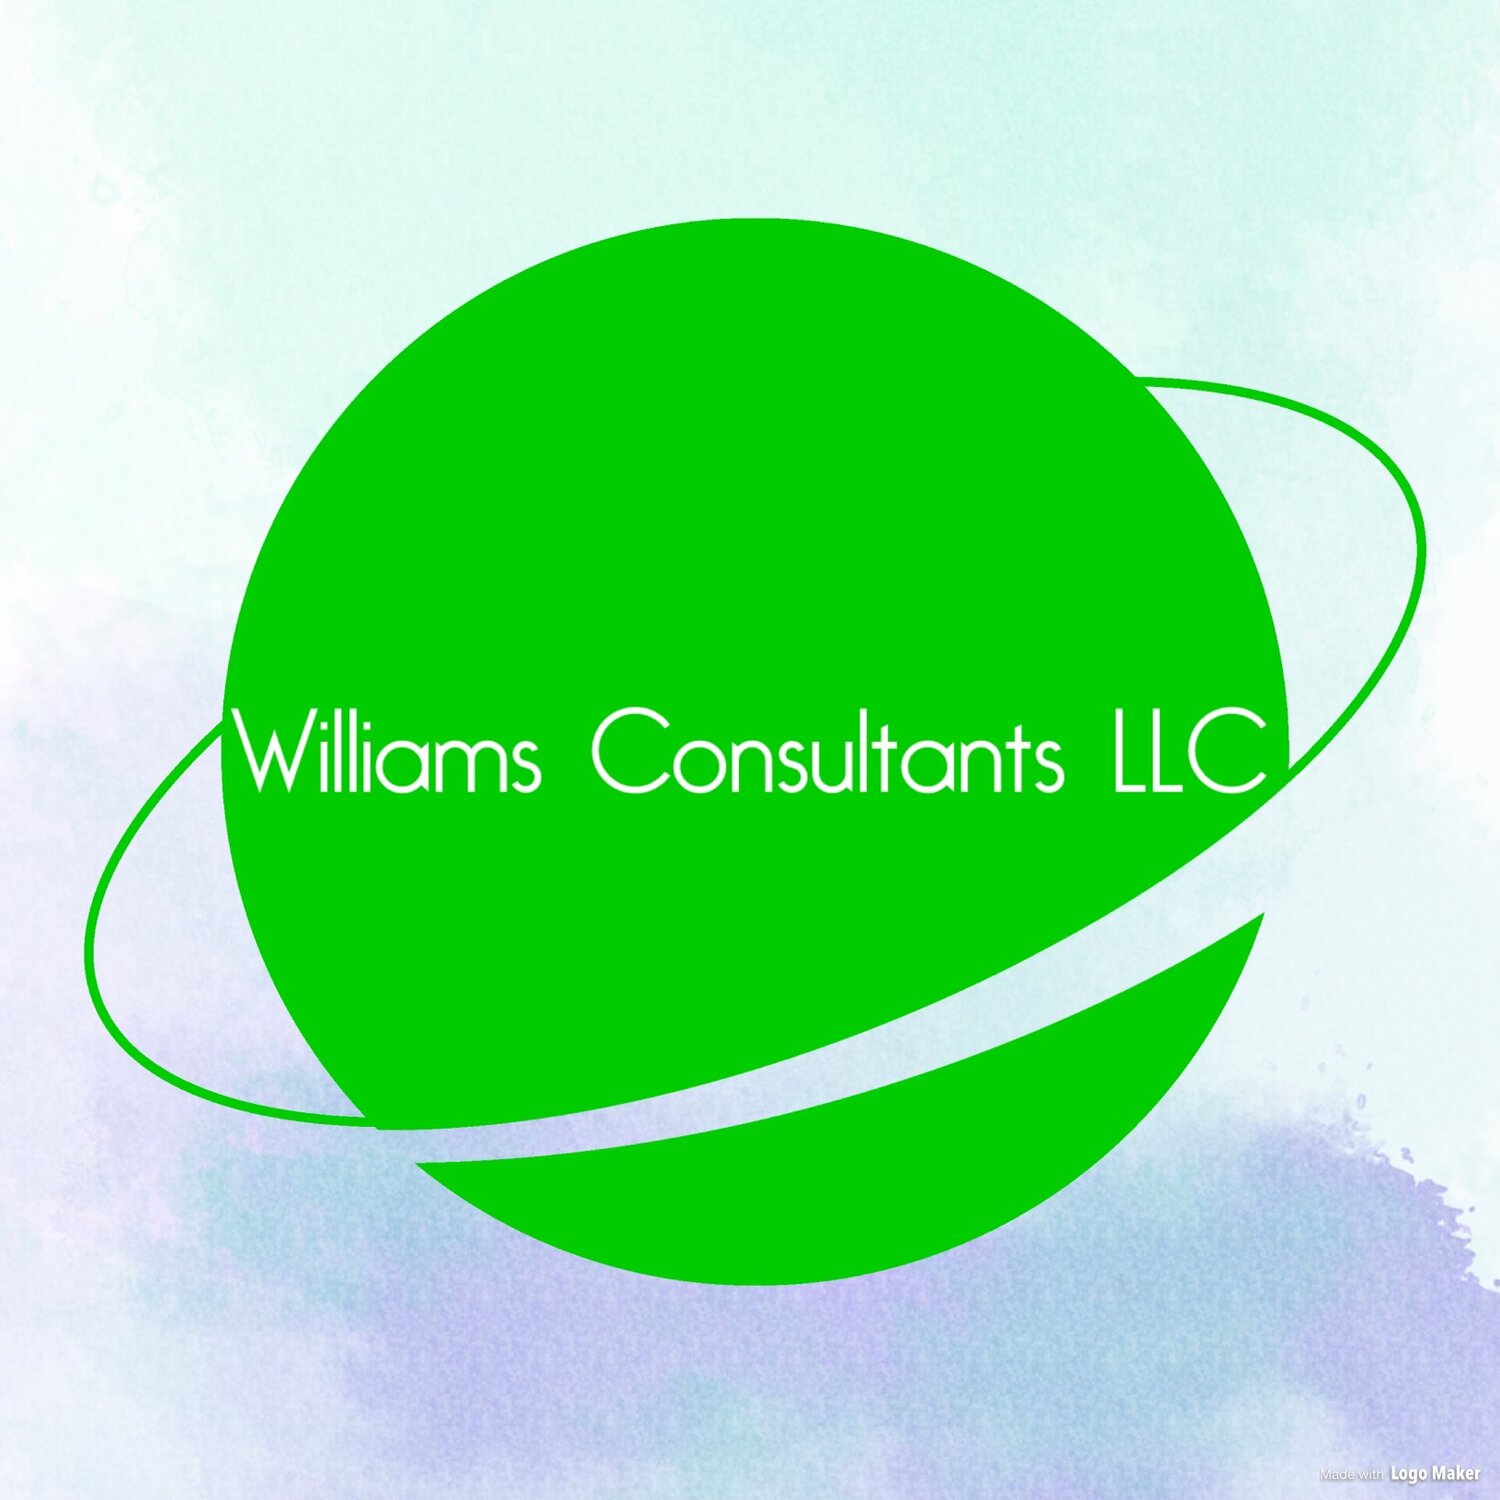 Williams Consultants